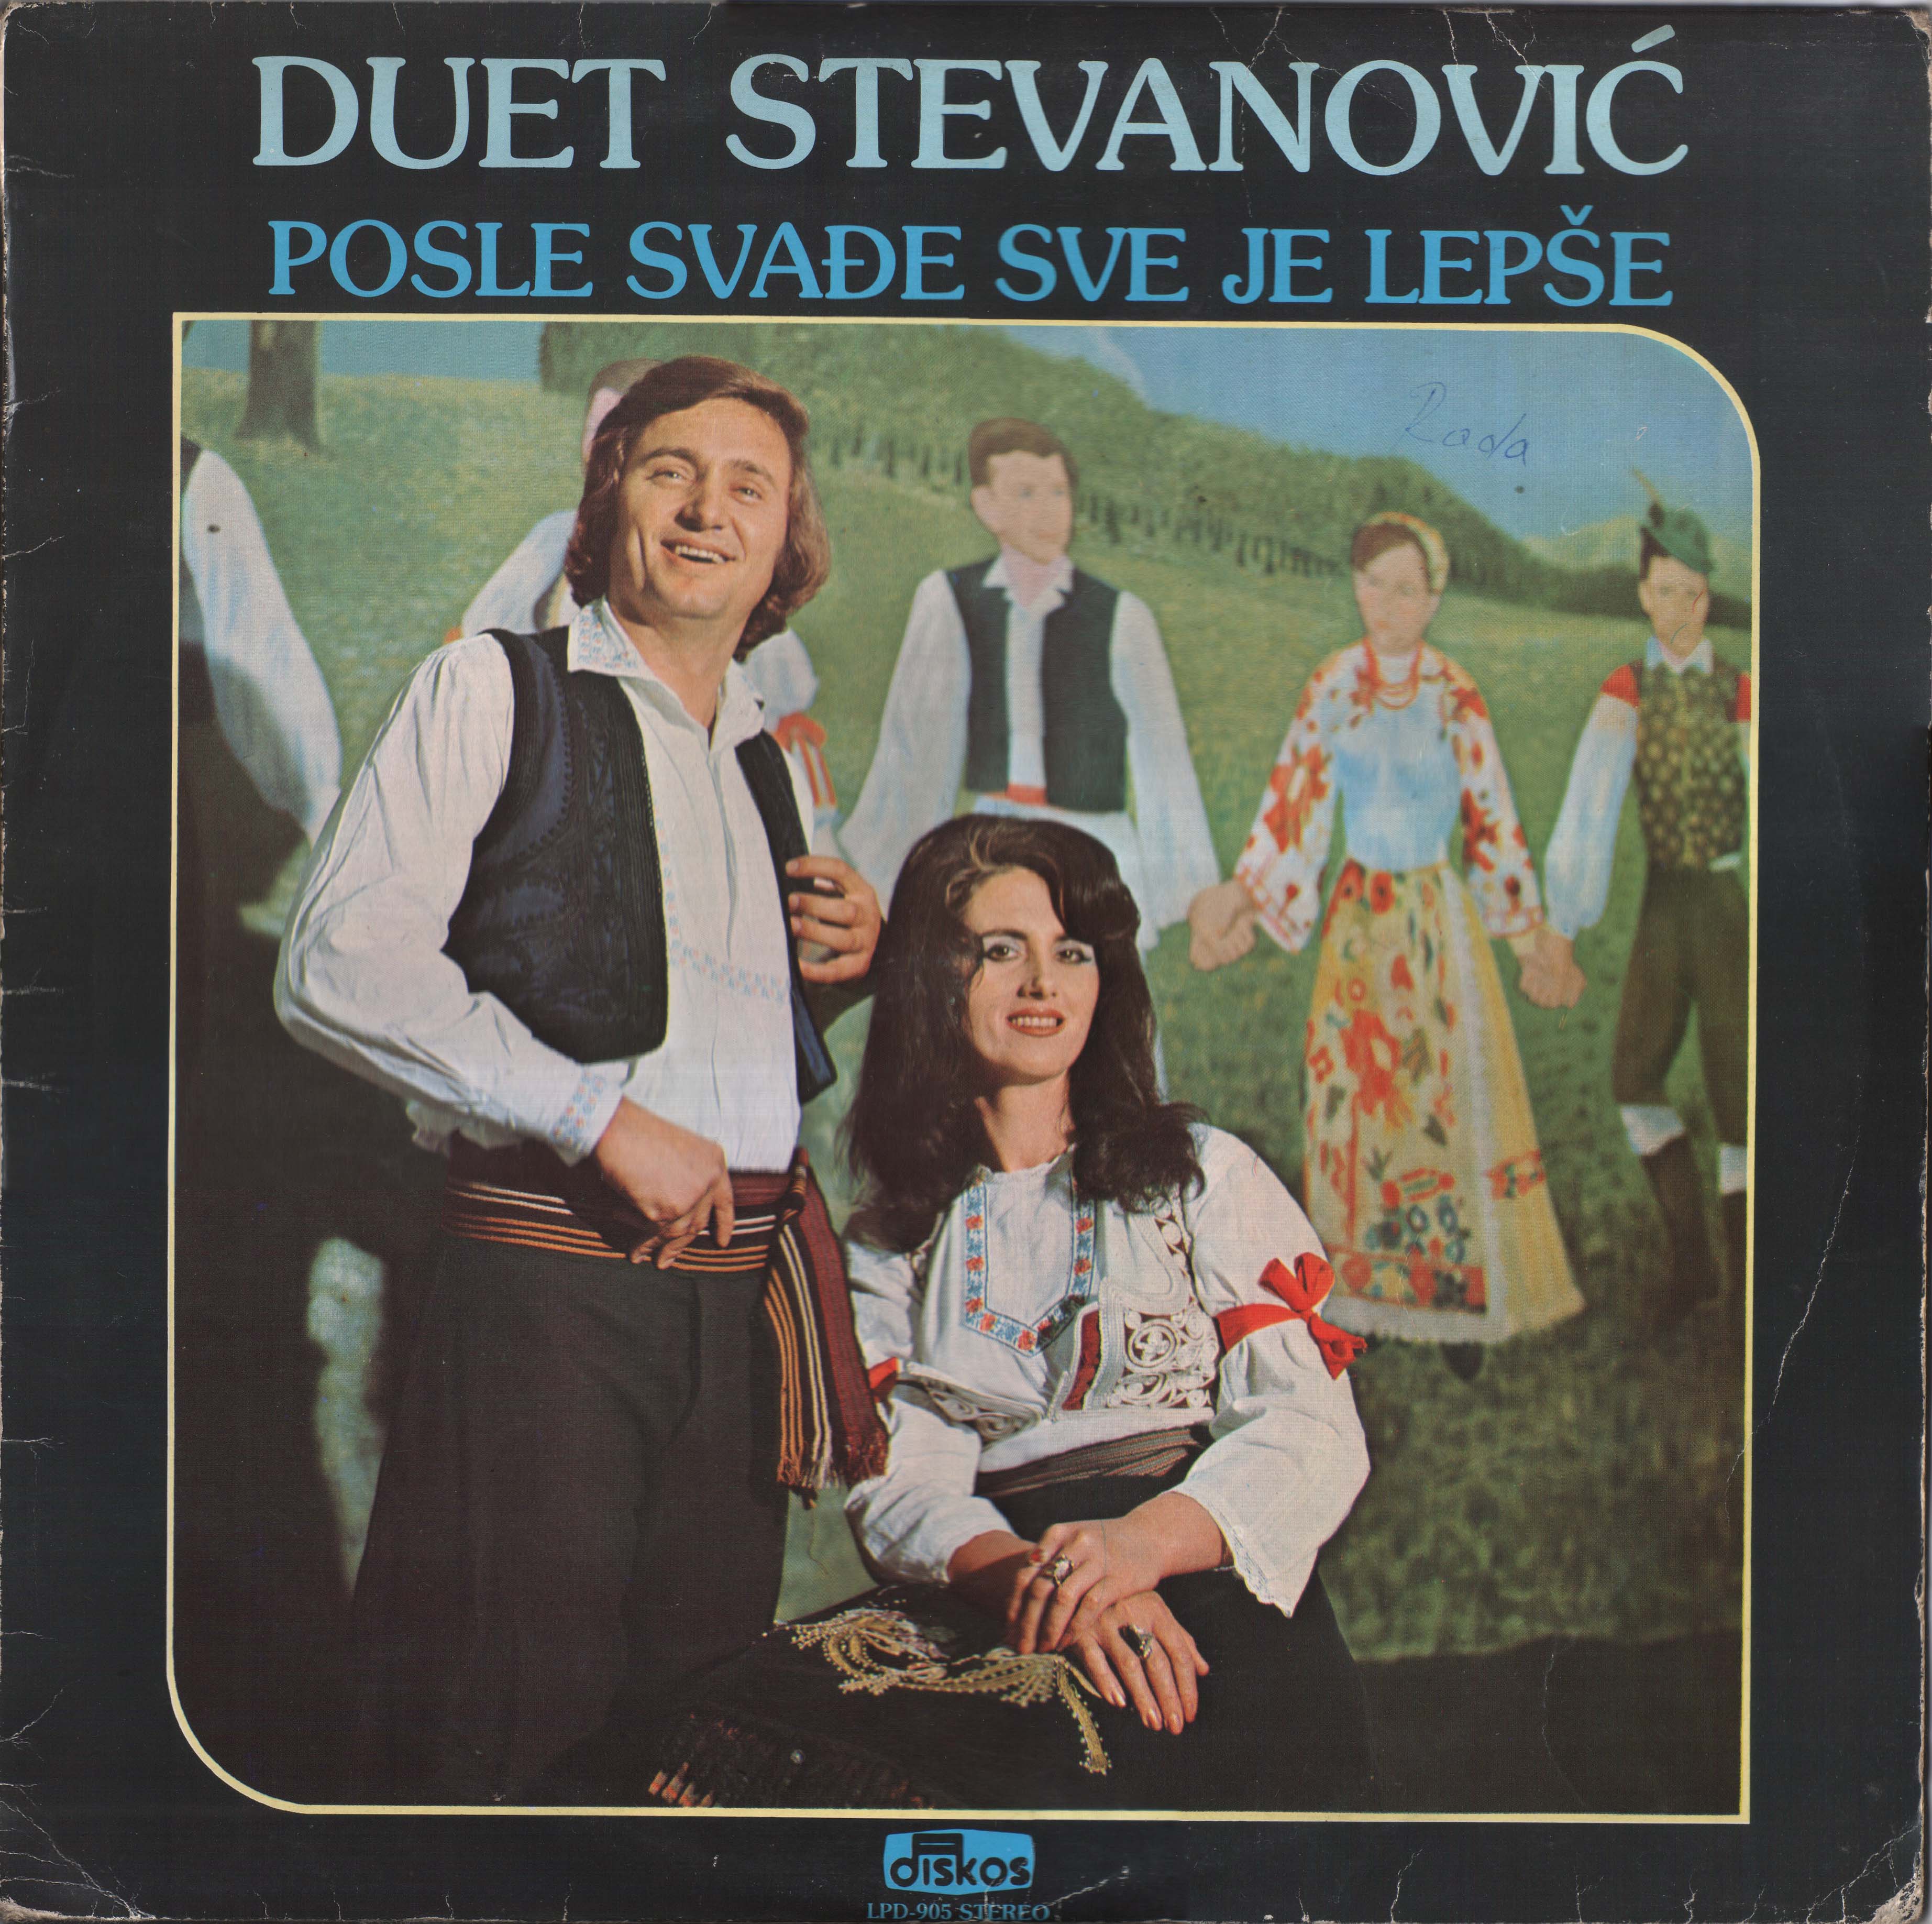 Duet Stevanovic 1981 P